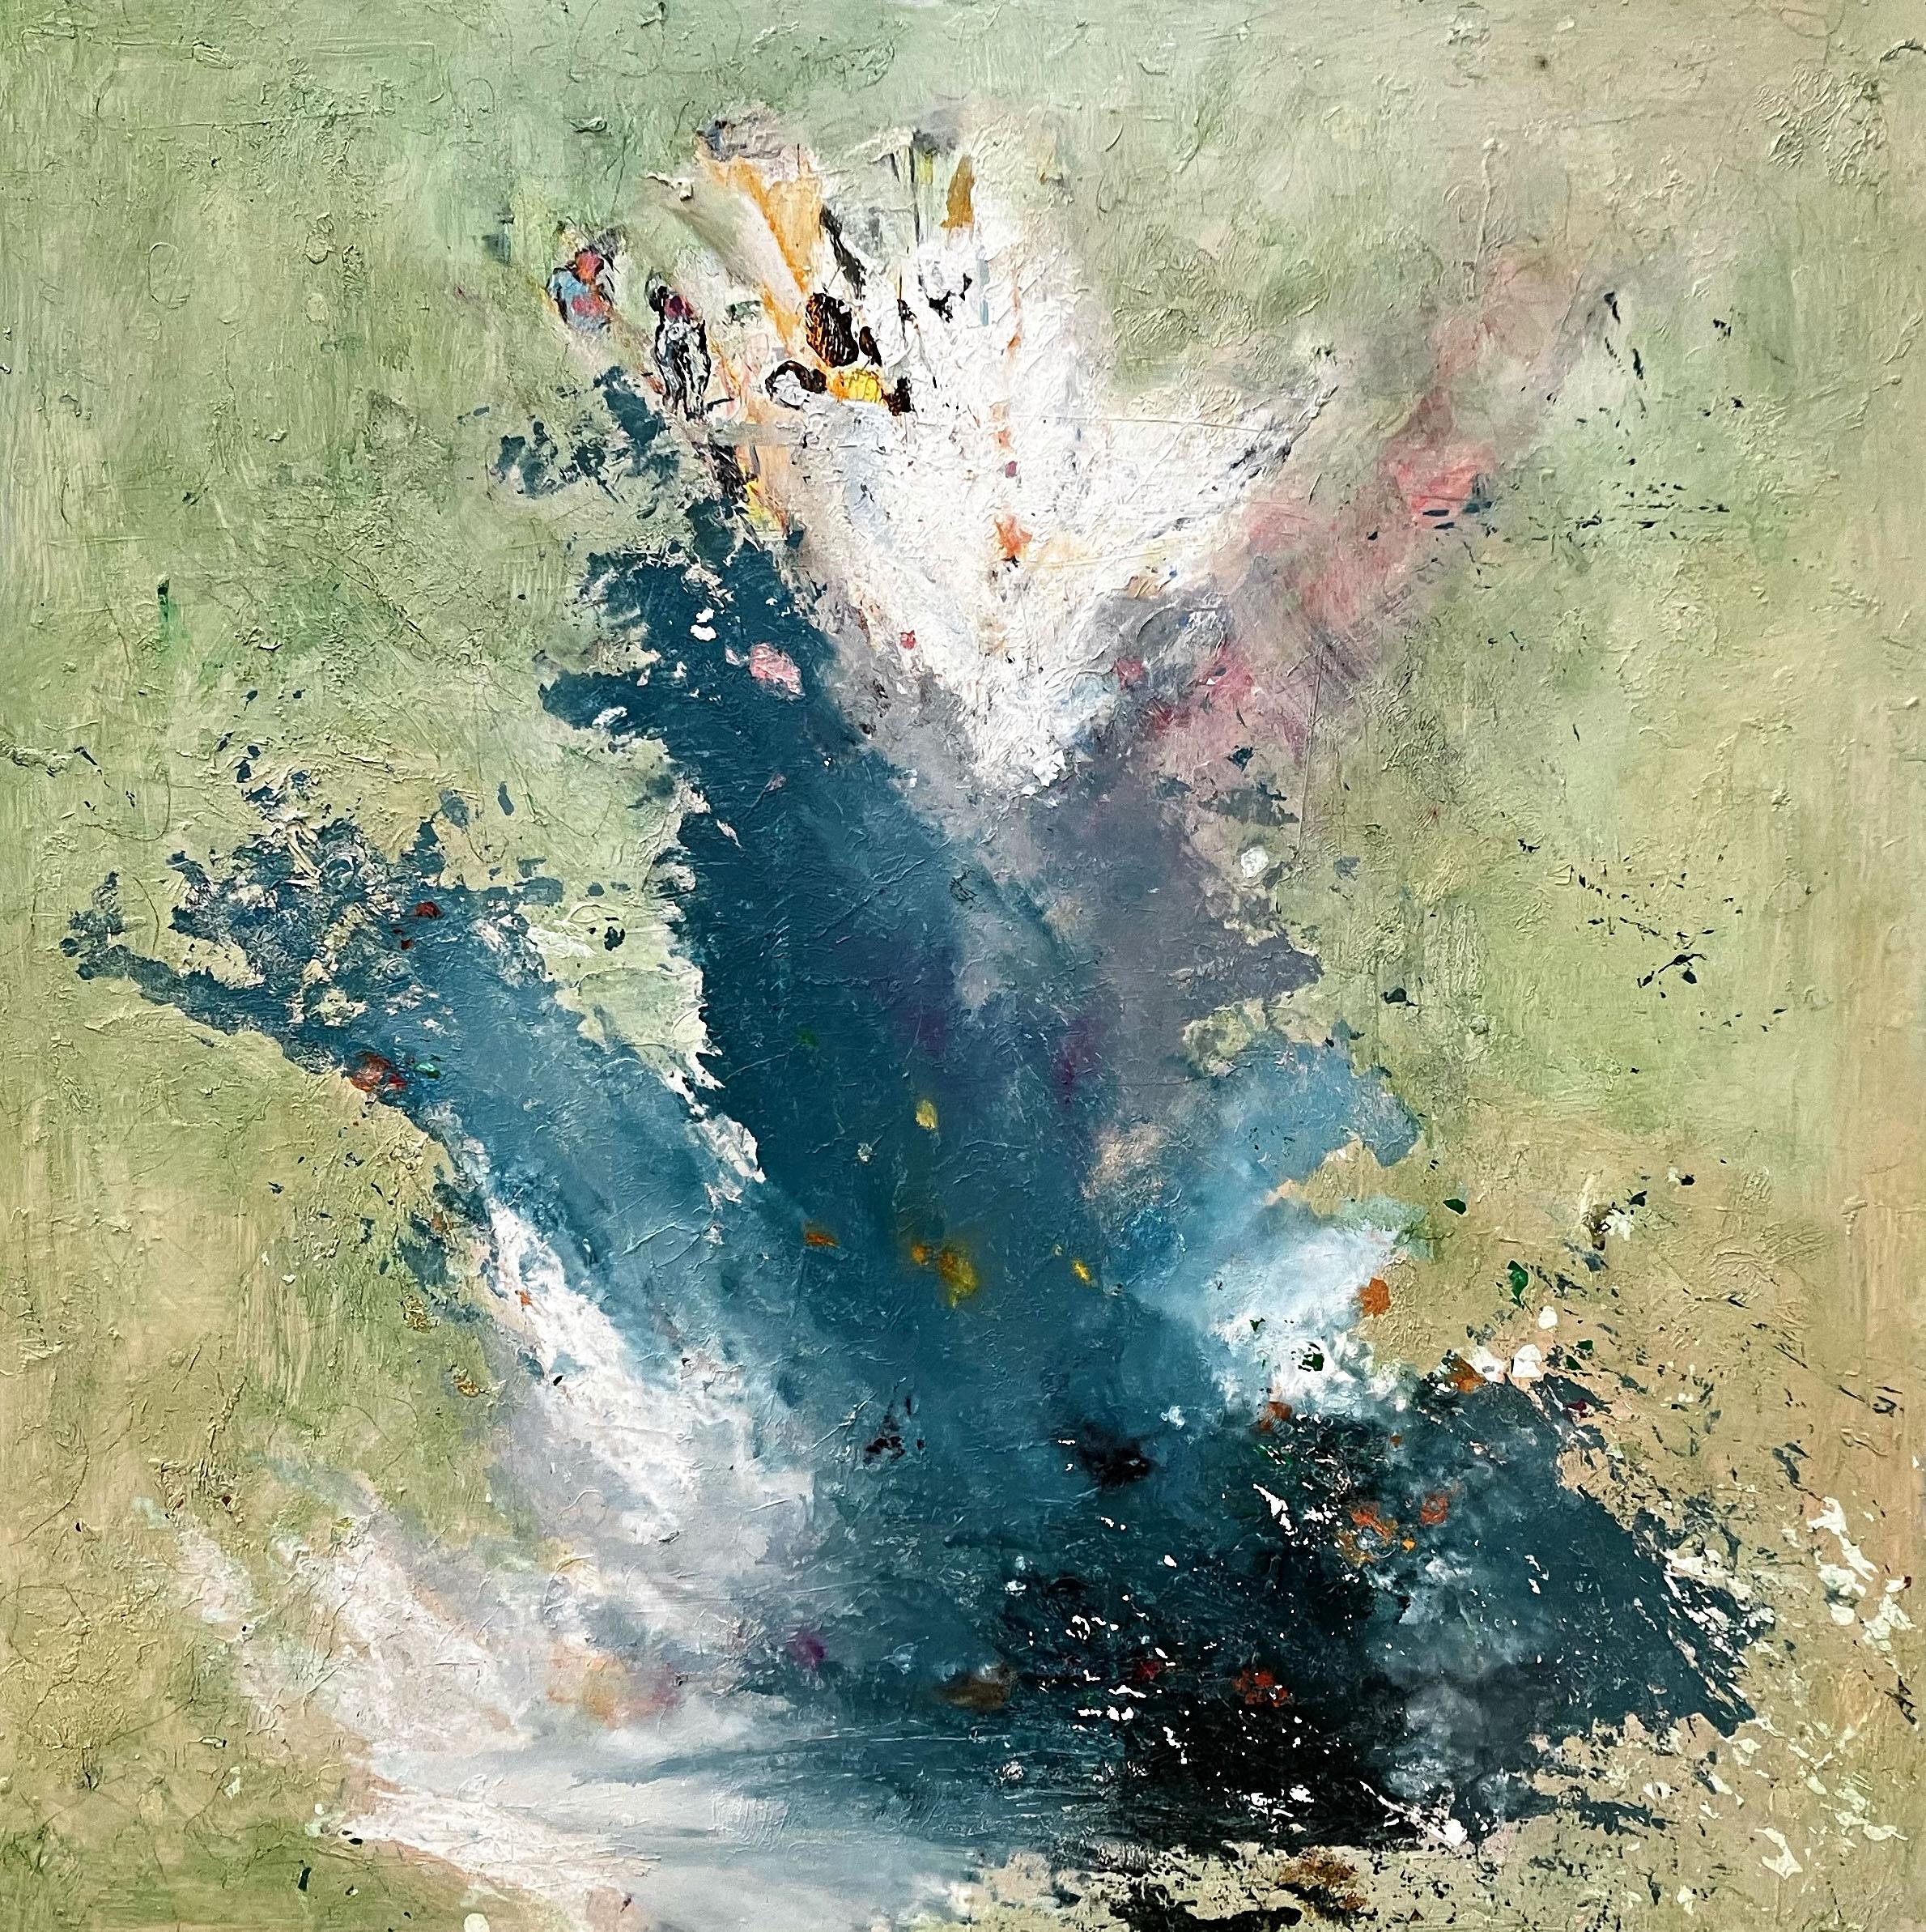 C. Dimitri Abstract Painting – Ozeanischer Pinselstrich, dynamische Pinselführung in abstraktem Gemälde mit blassgrünem, blauem und weißem